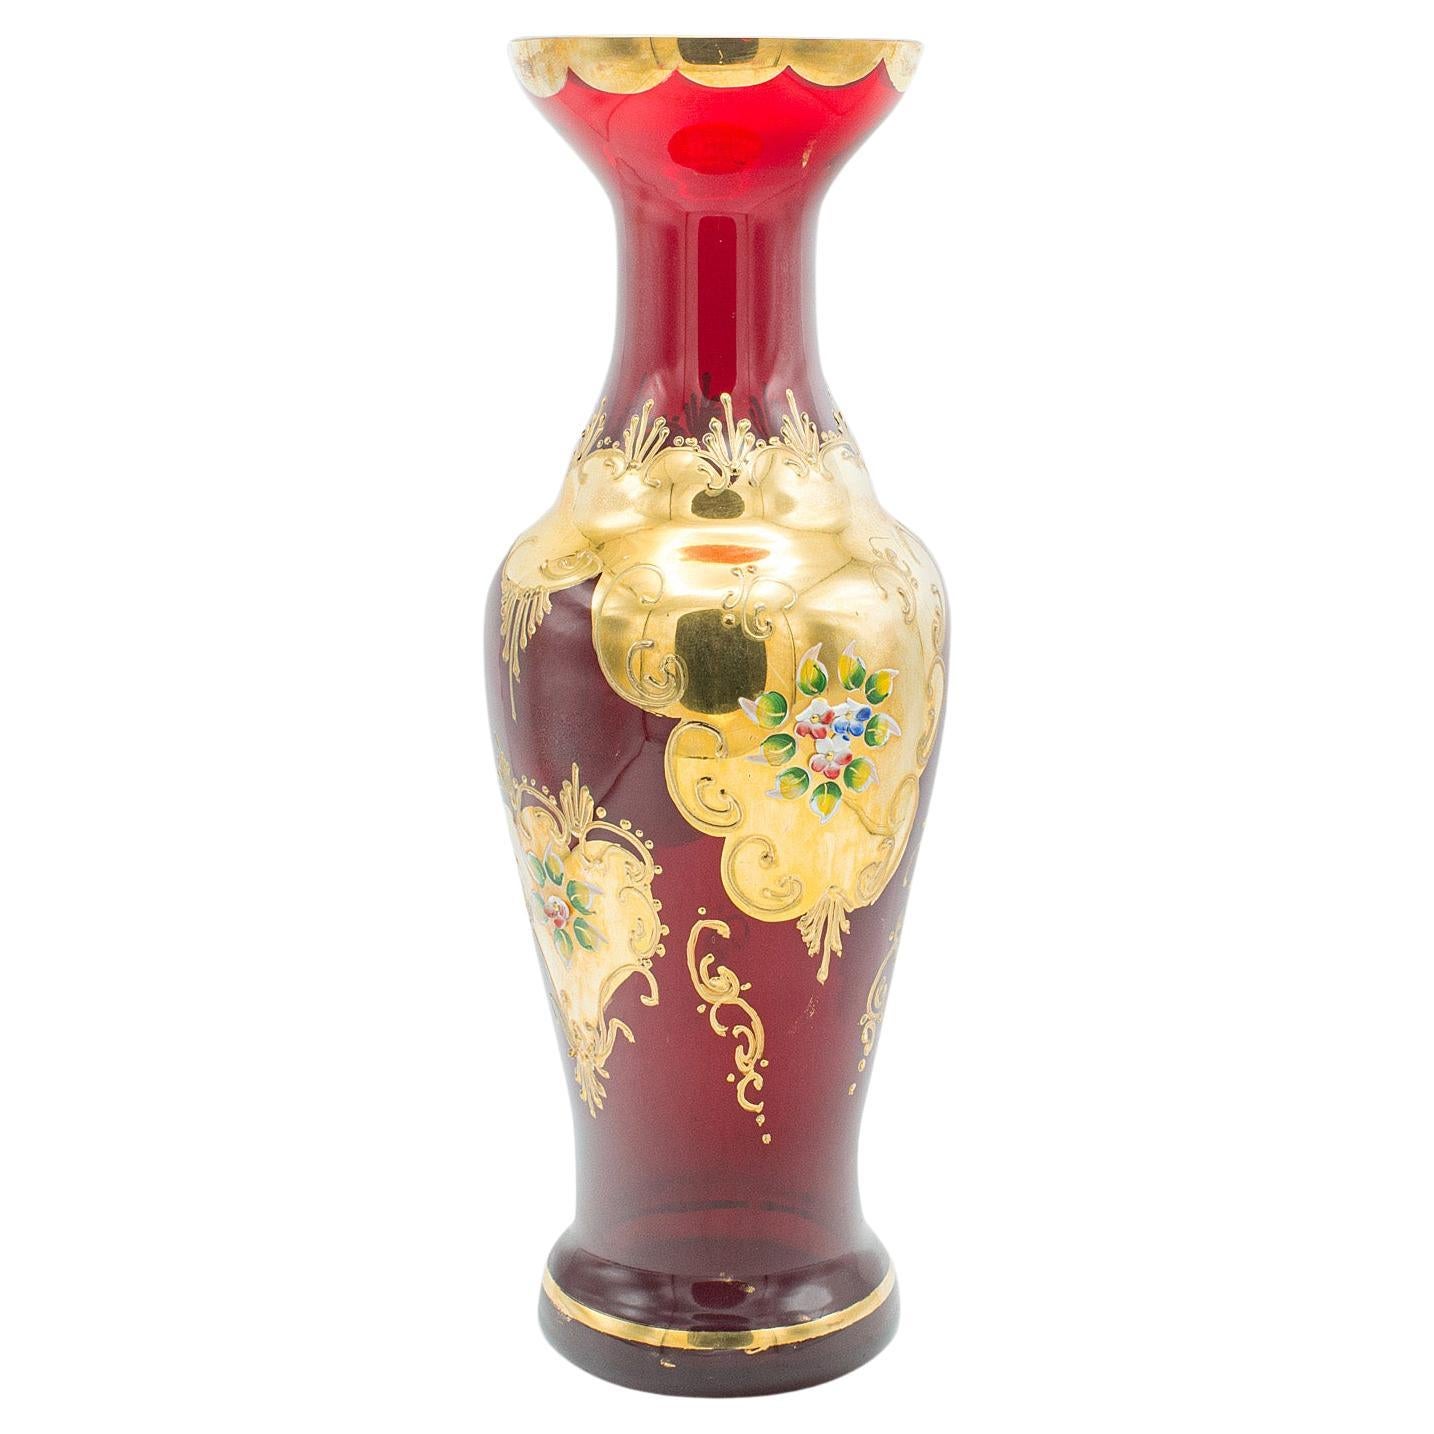 Vintage Venetian Show Vase, Italian Art Glass, Gilt, Decorative Flower Urn, 1970 For Sale